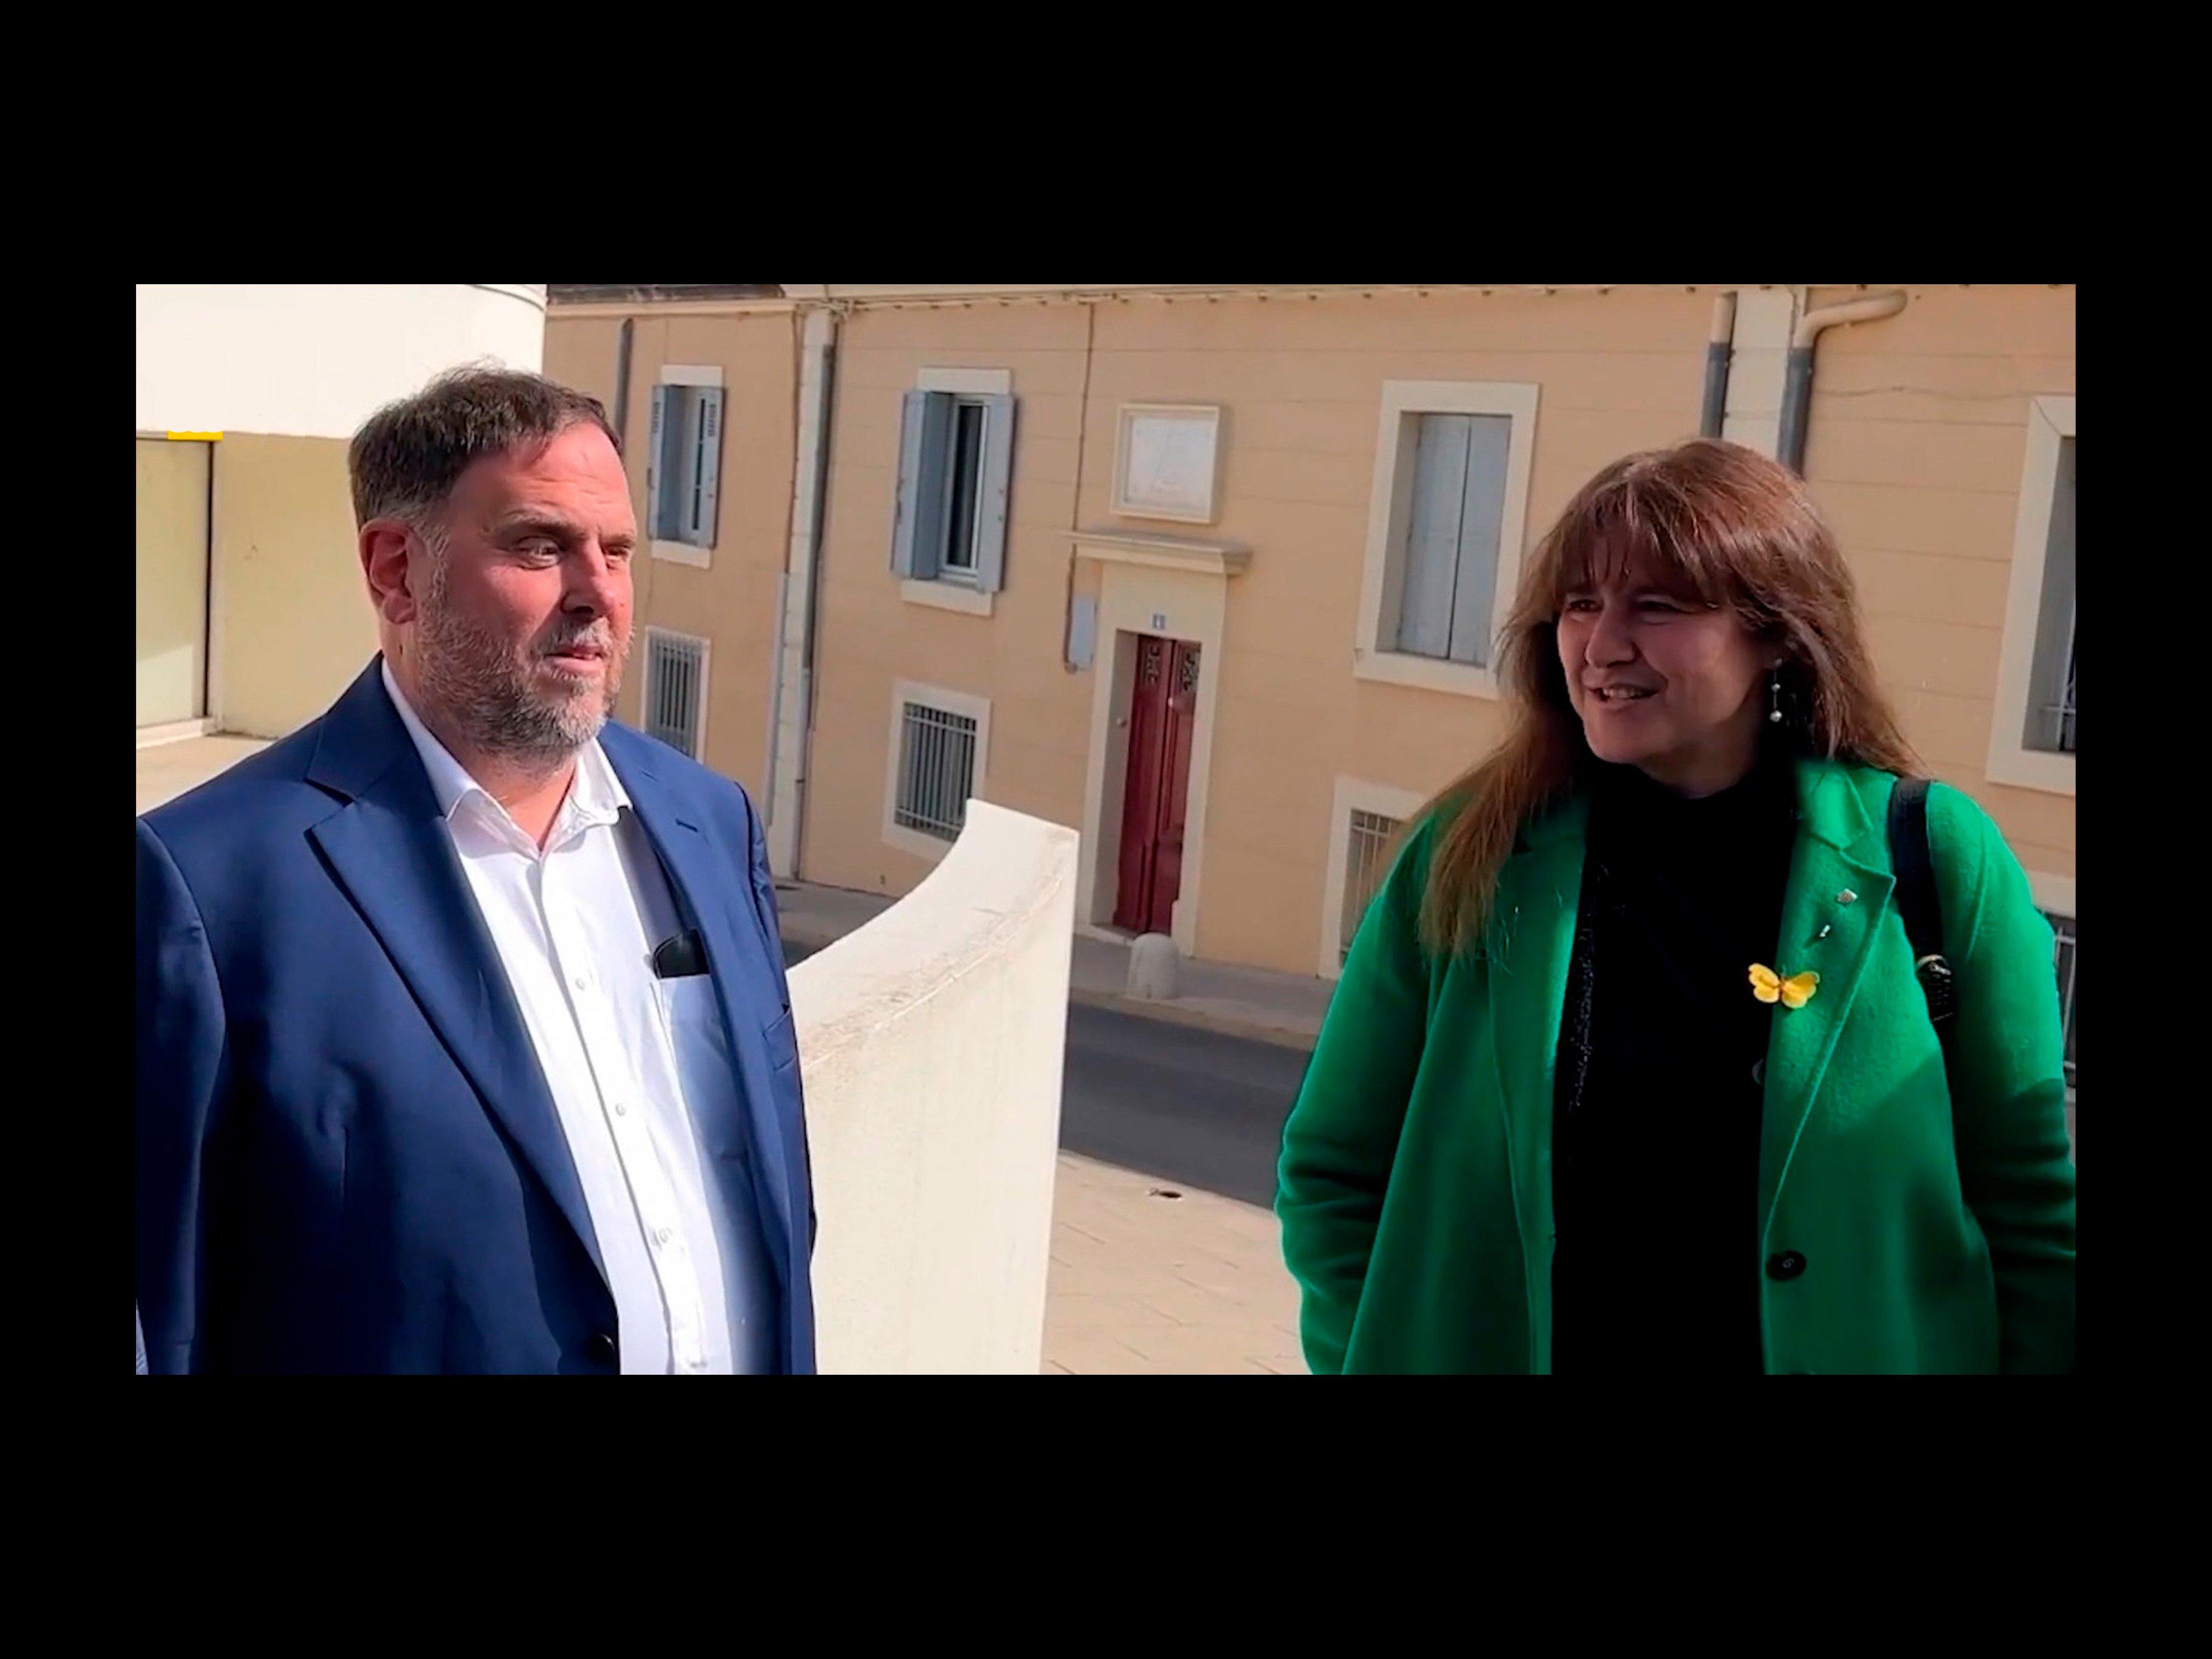 Frialdad entre Oriol Junqueras y Laura Borràs en Montpellier | VÍDEO